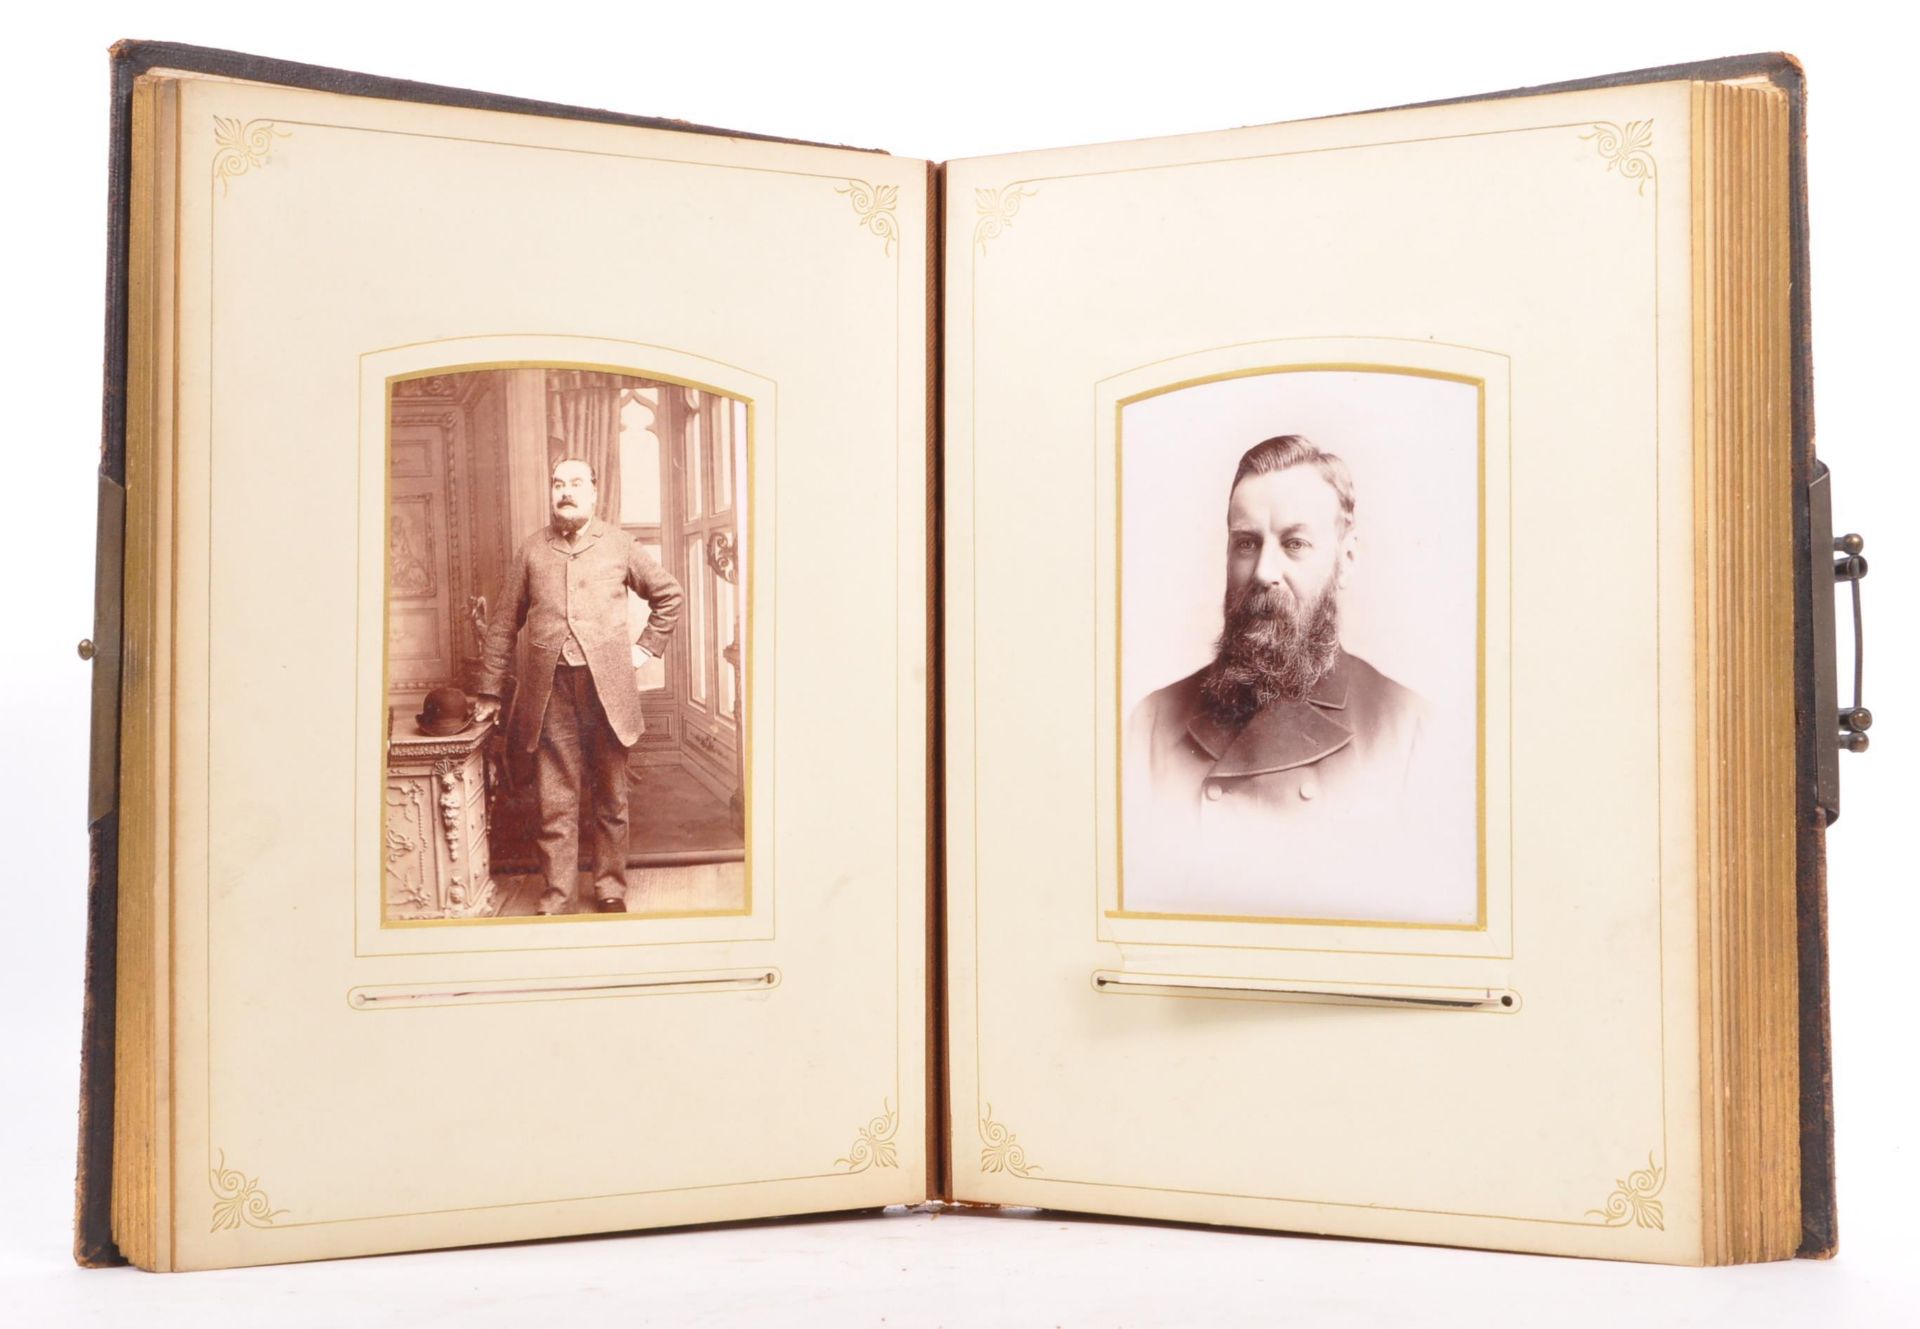 19TH CENTURY CART DE VISITE & SIMILAR PORTRAIT PHOTOGRAPHS - Image 4 of 5